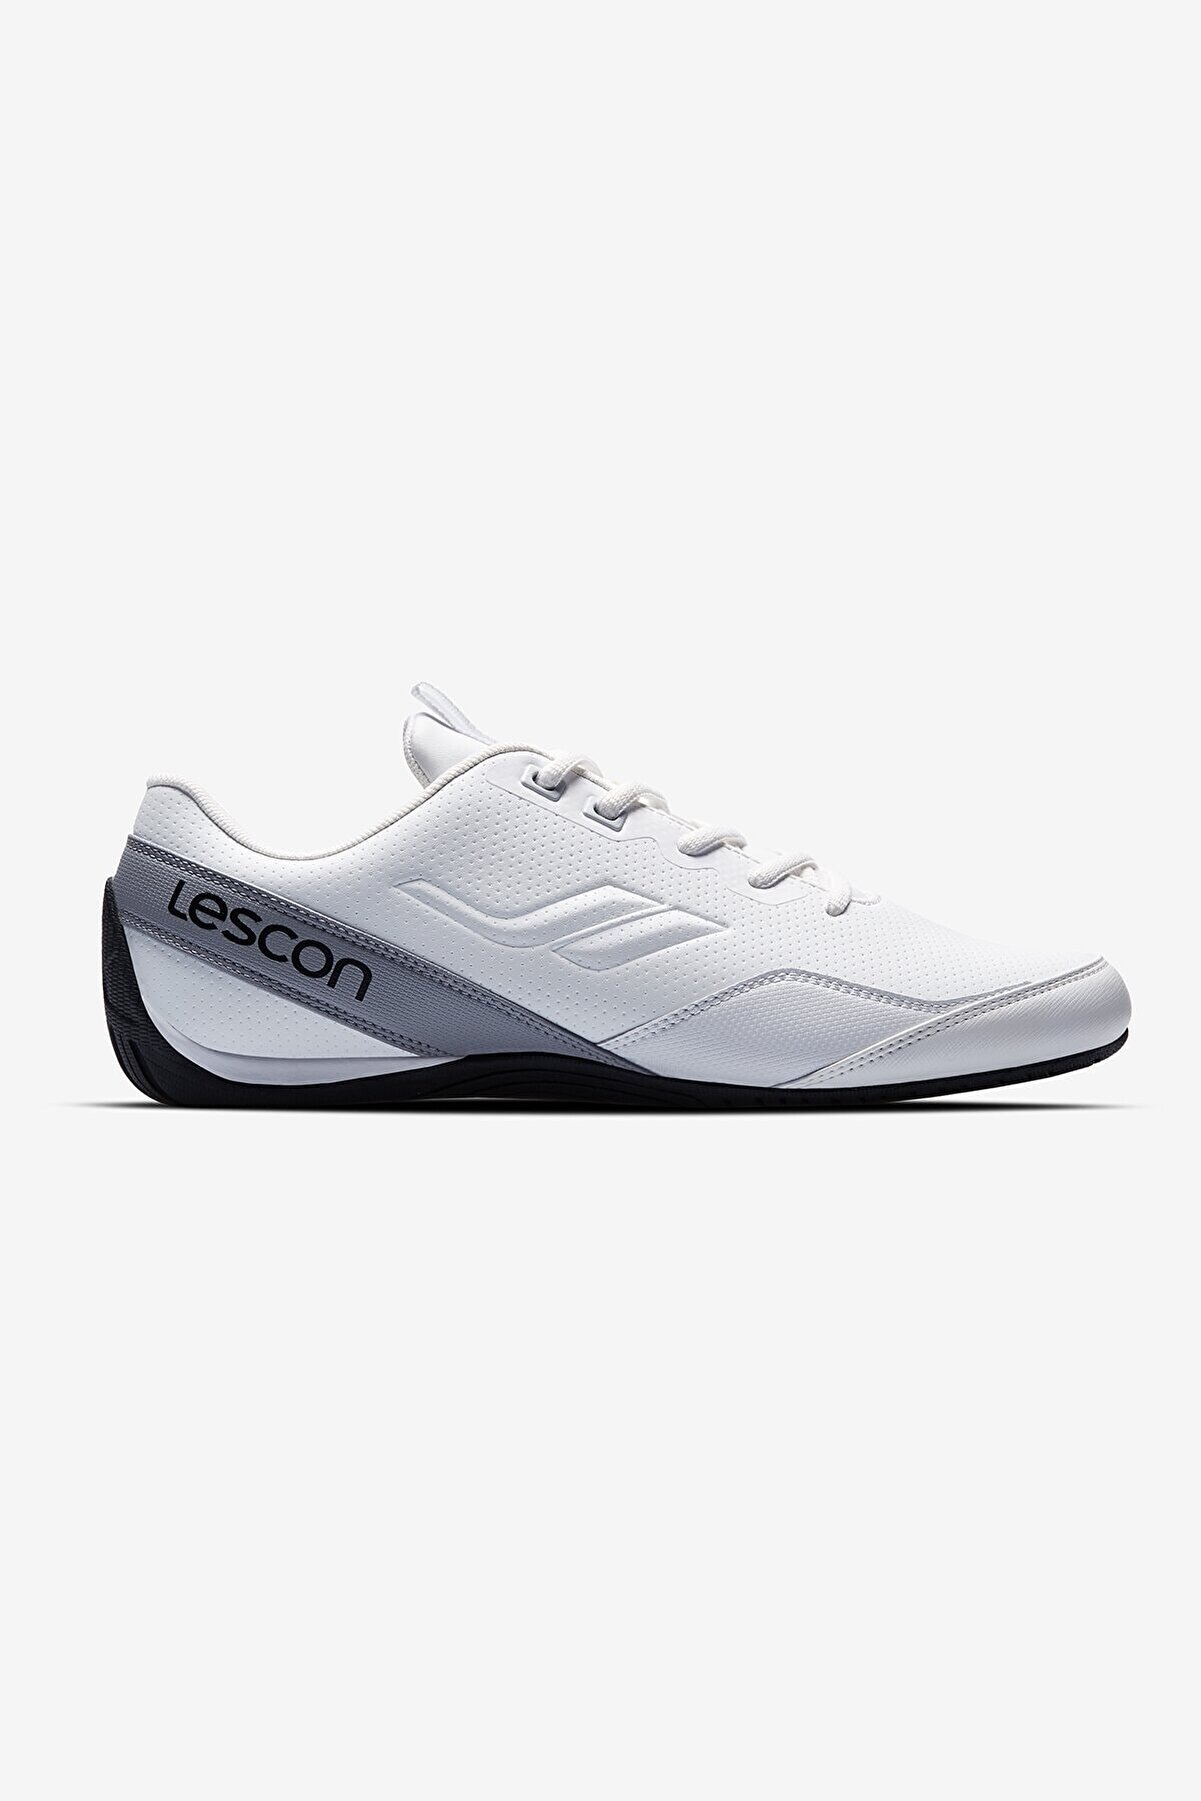 Lescon Blazer 3 Beyaz Erkek Sneaker Ayakkabı